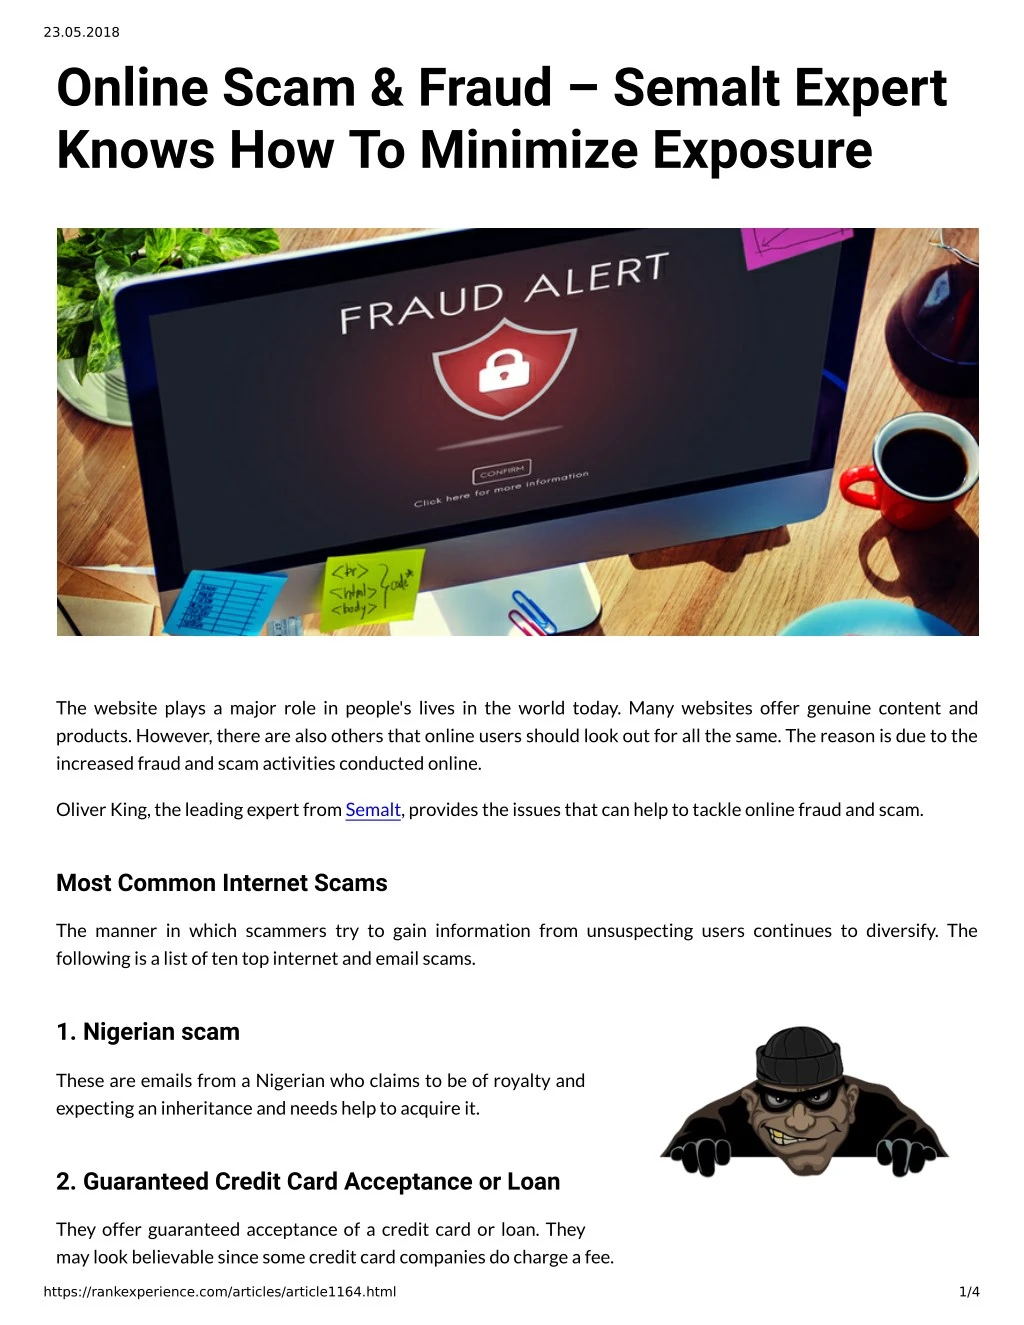 23 05 2018 online scam fraud semalt expert knows